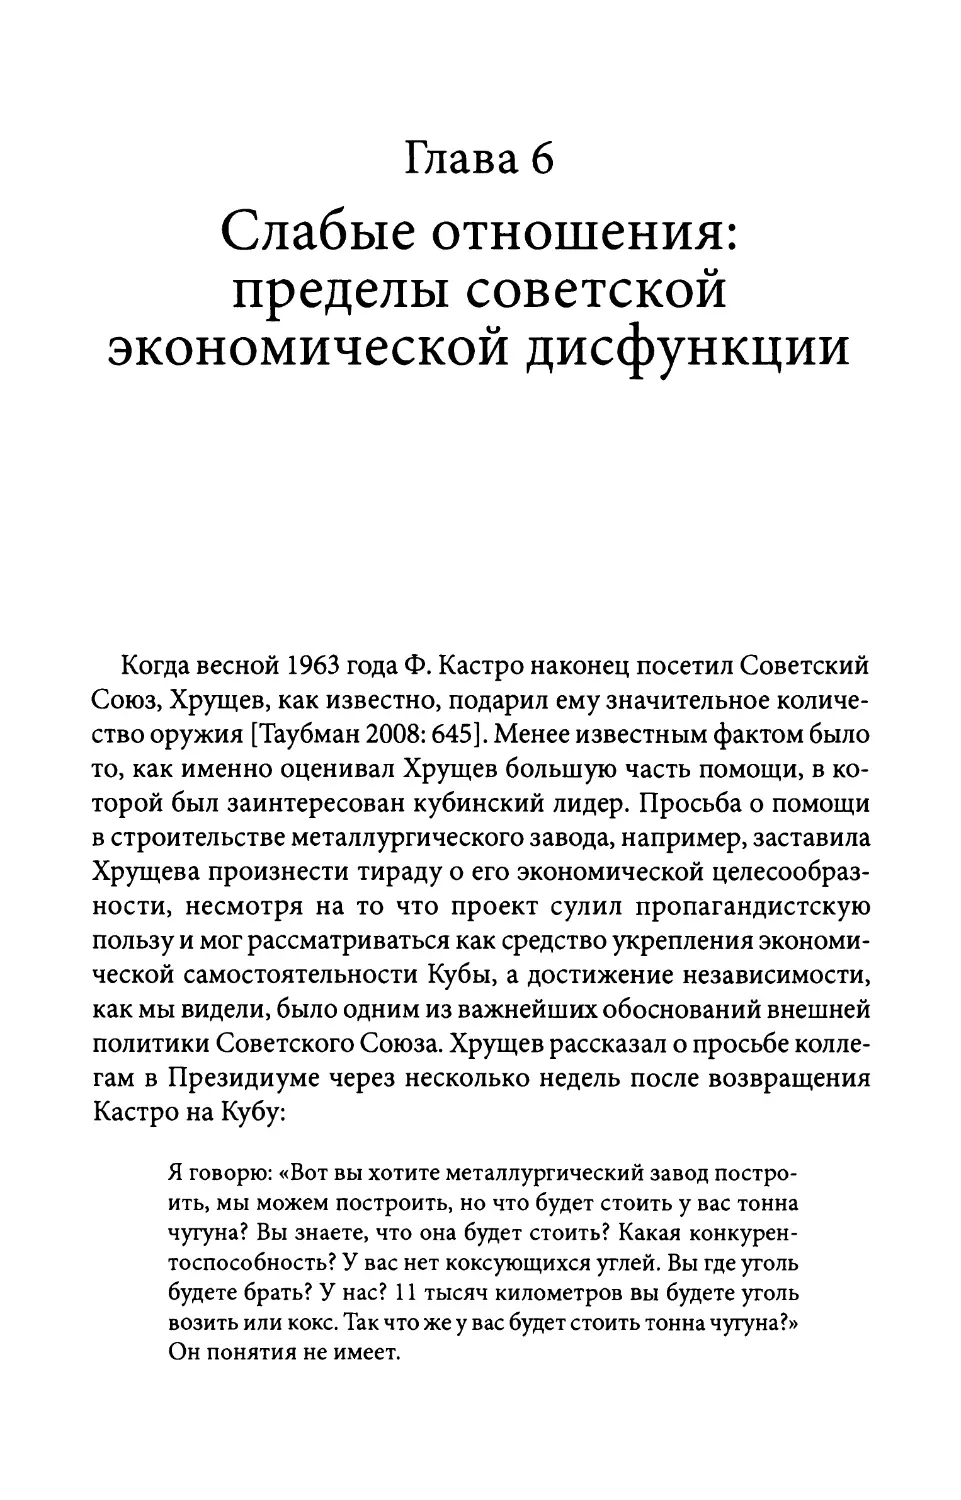 Глава 6. Слабые отношения: пределы советской экономической дисфункции